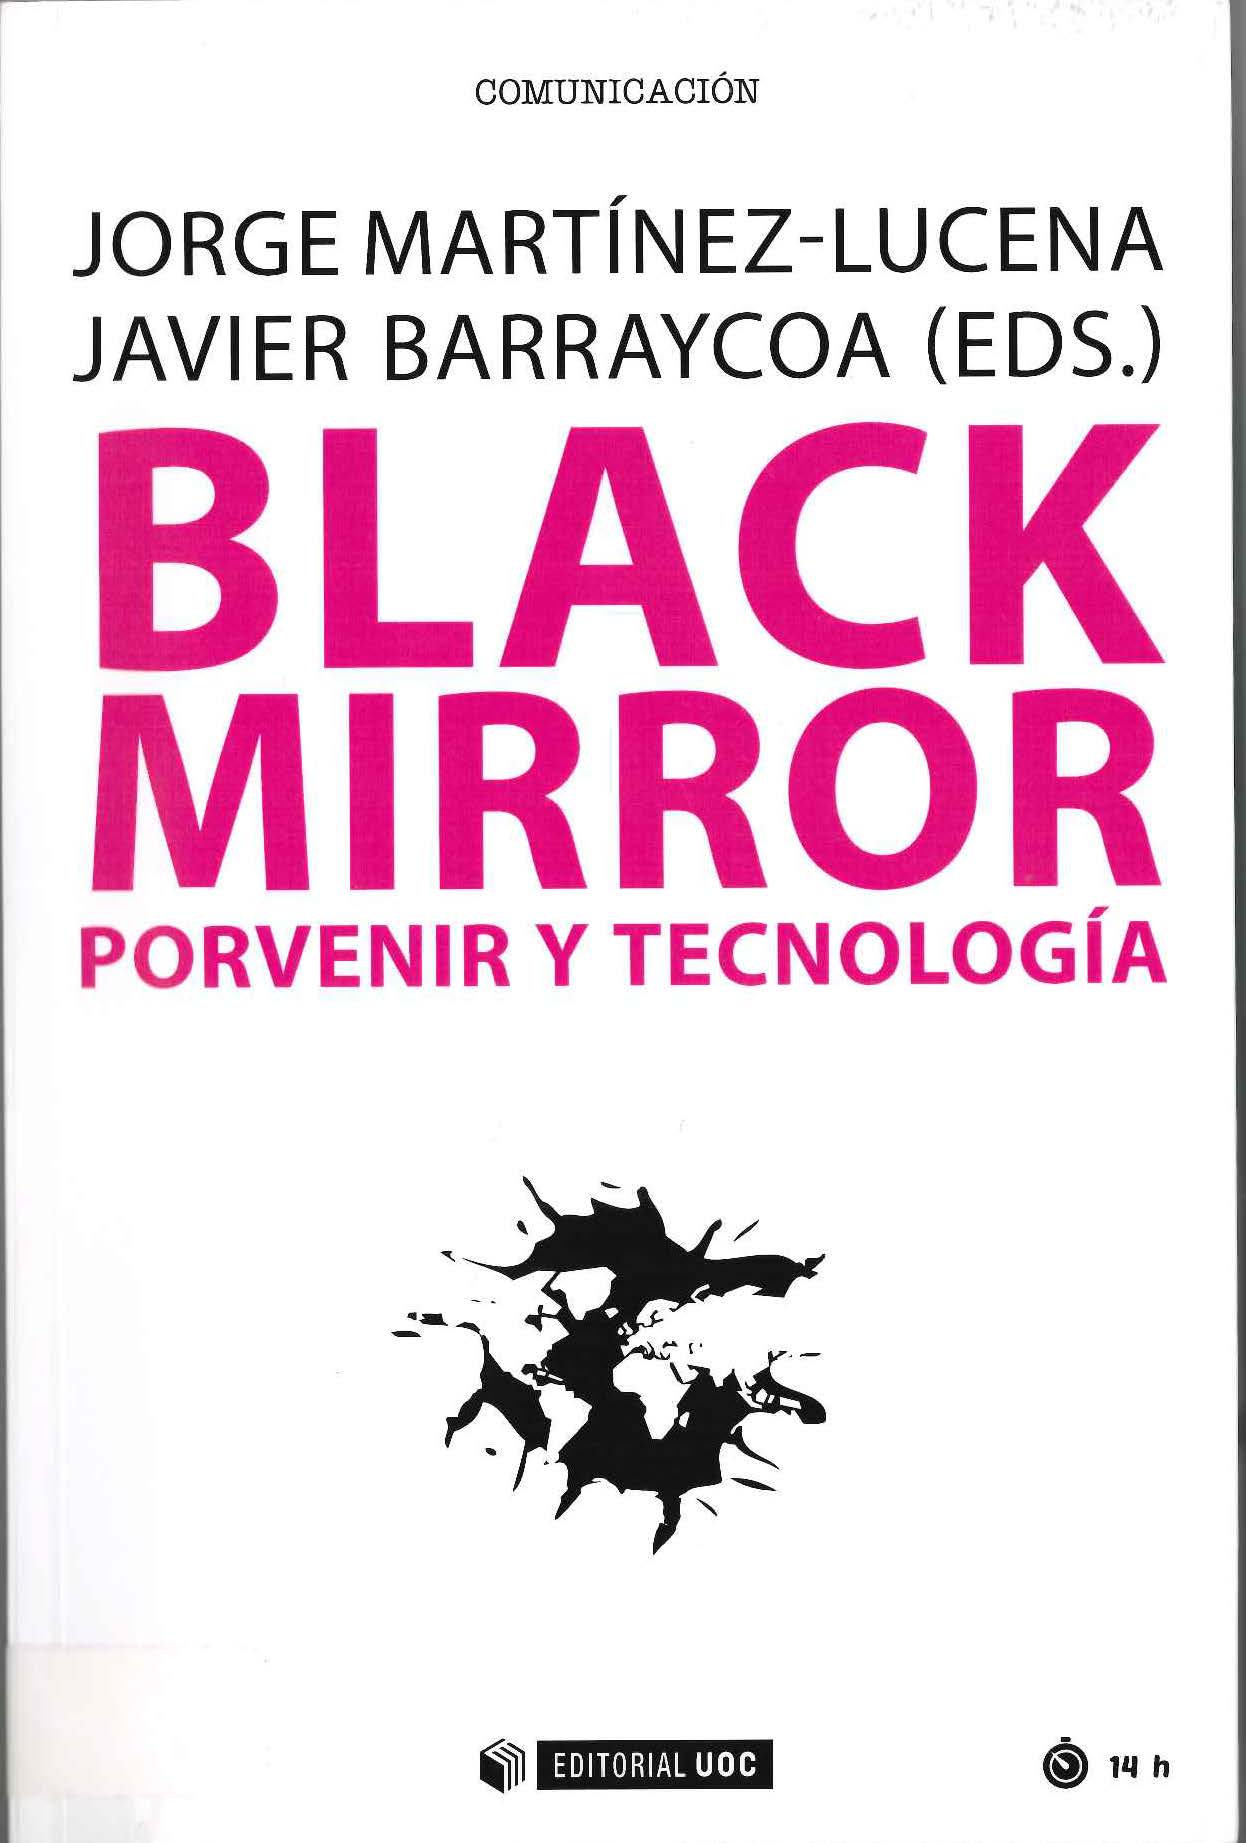 Imagen de portada del libro Black mirror